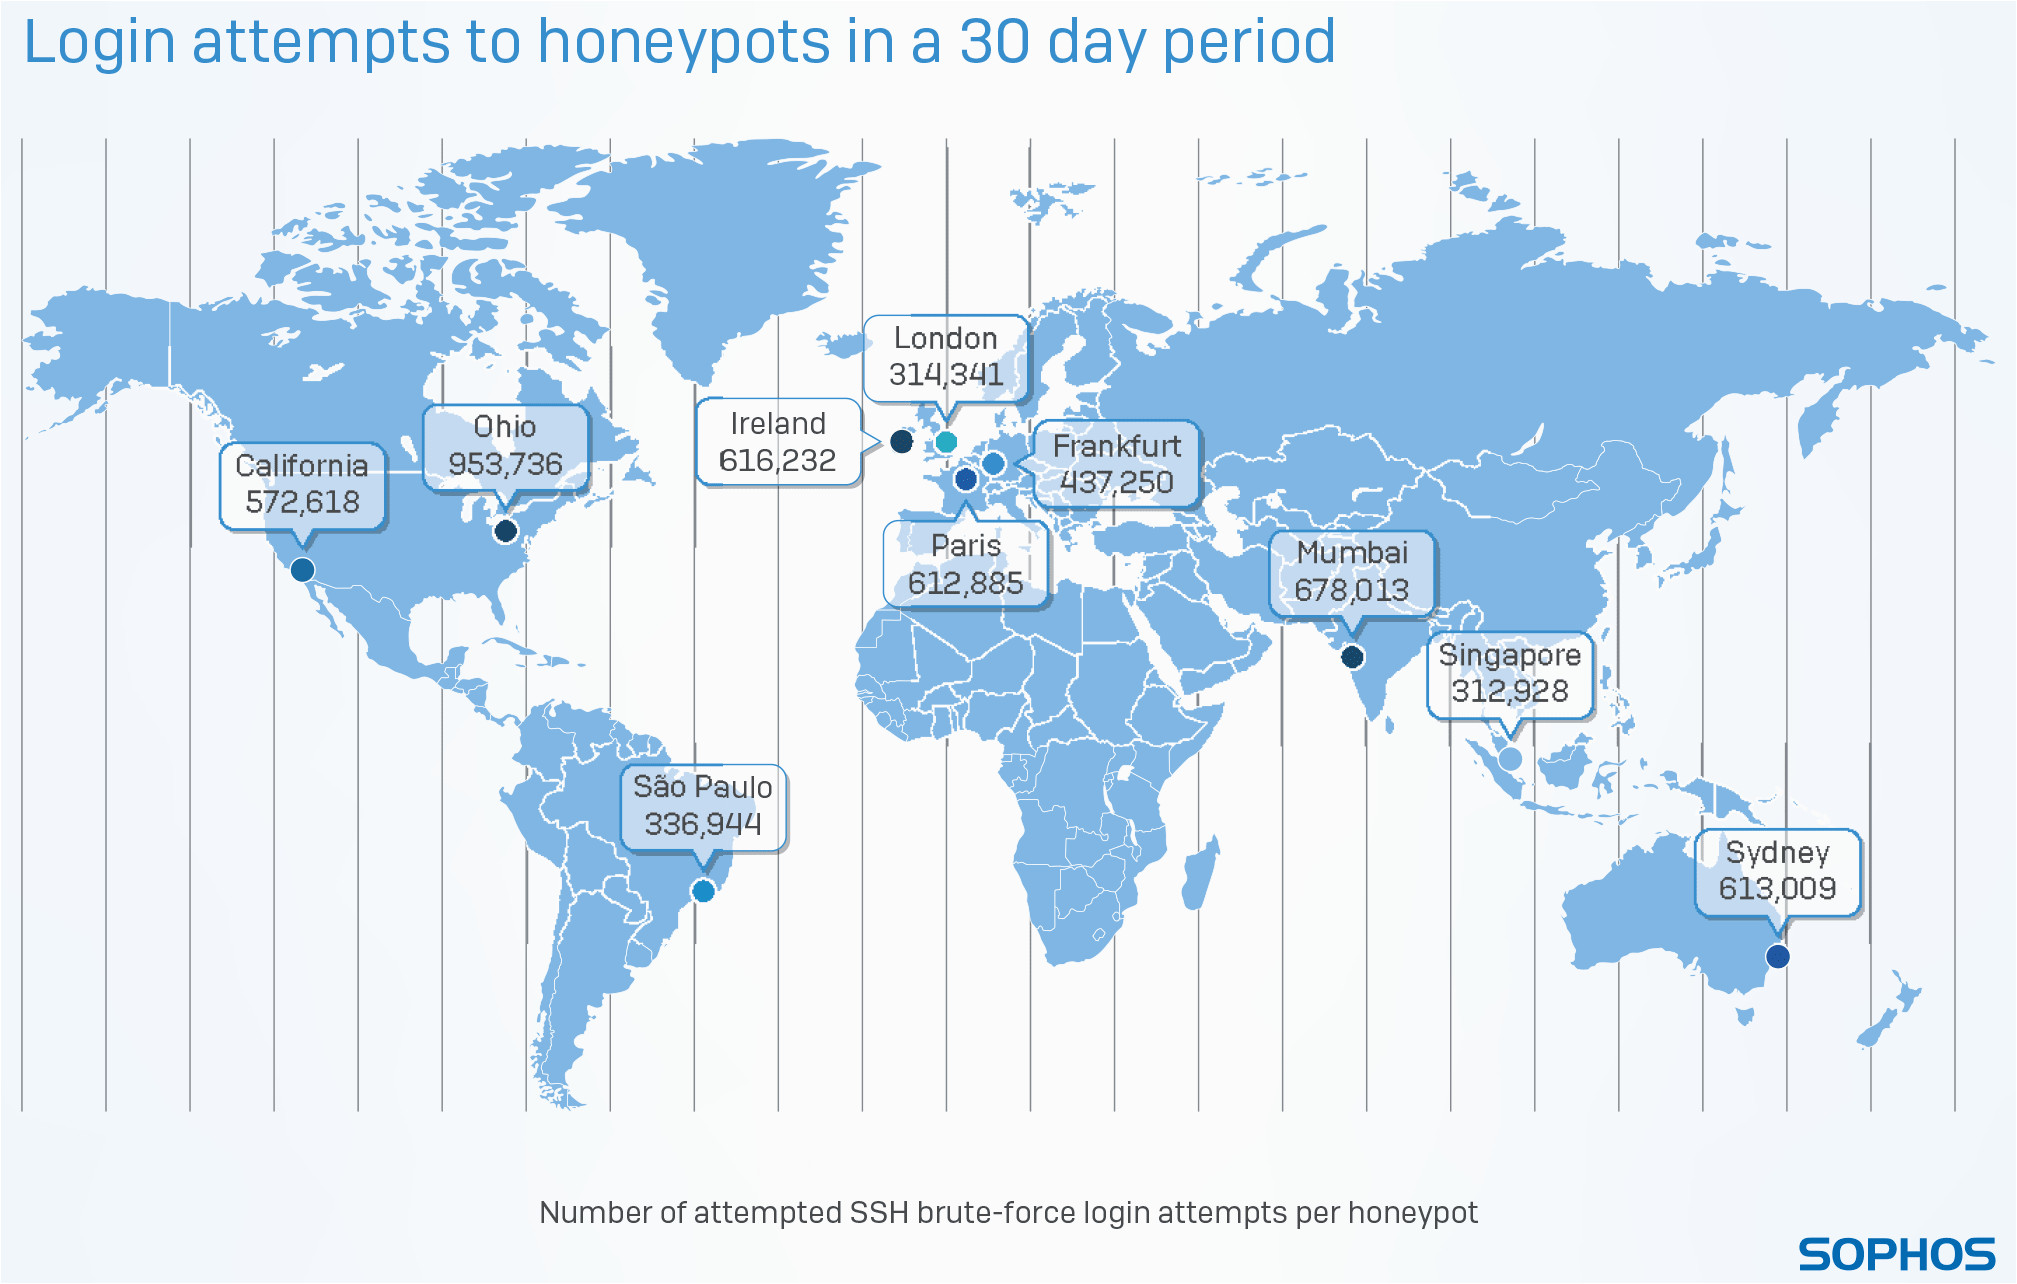 sophos analyse von cyberattacken auf honeypots utmshop